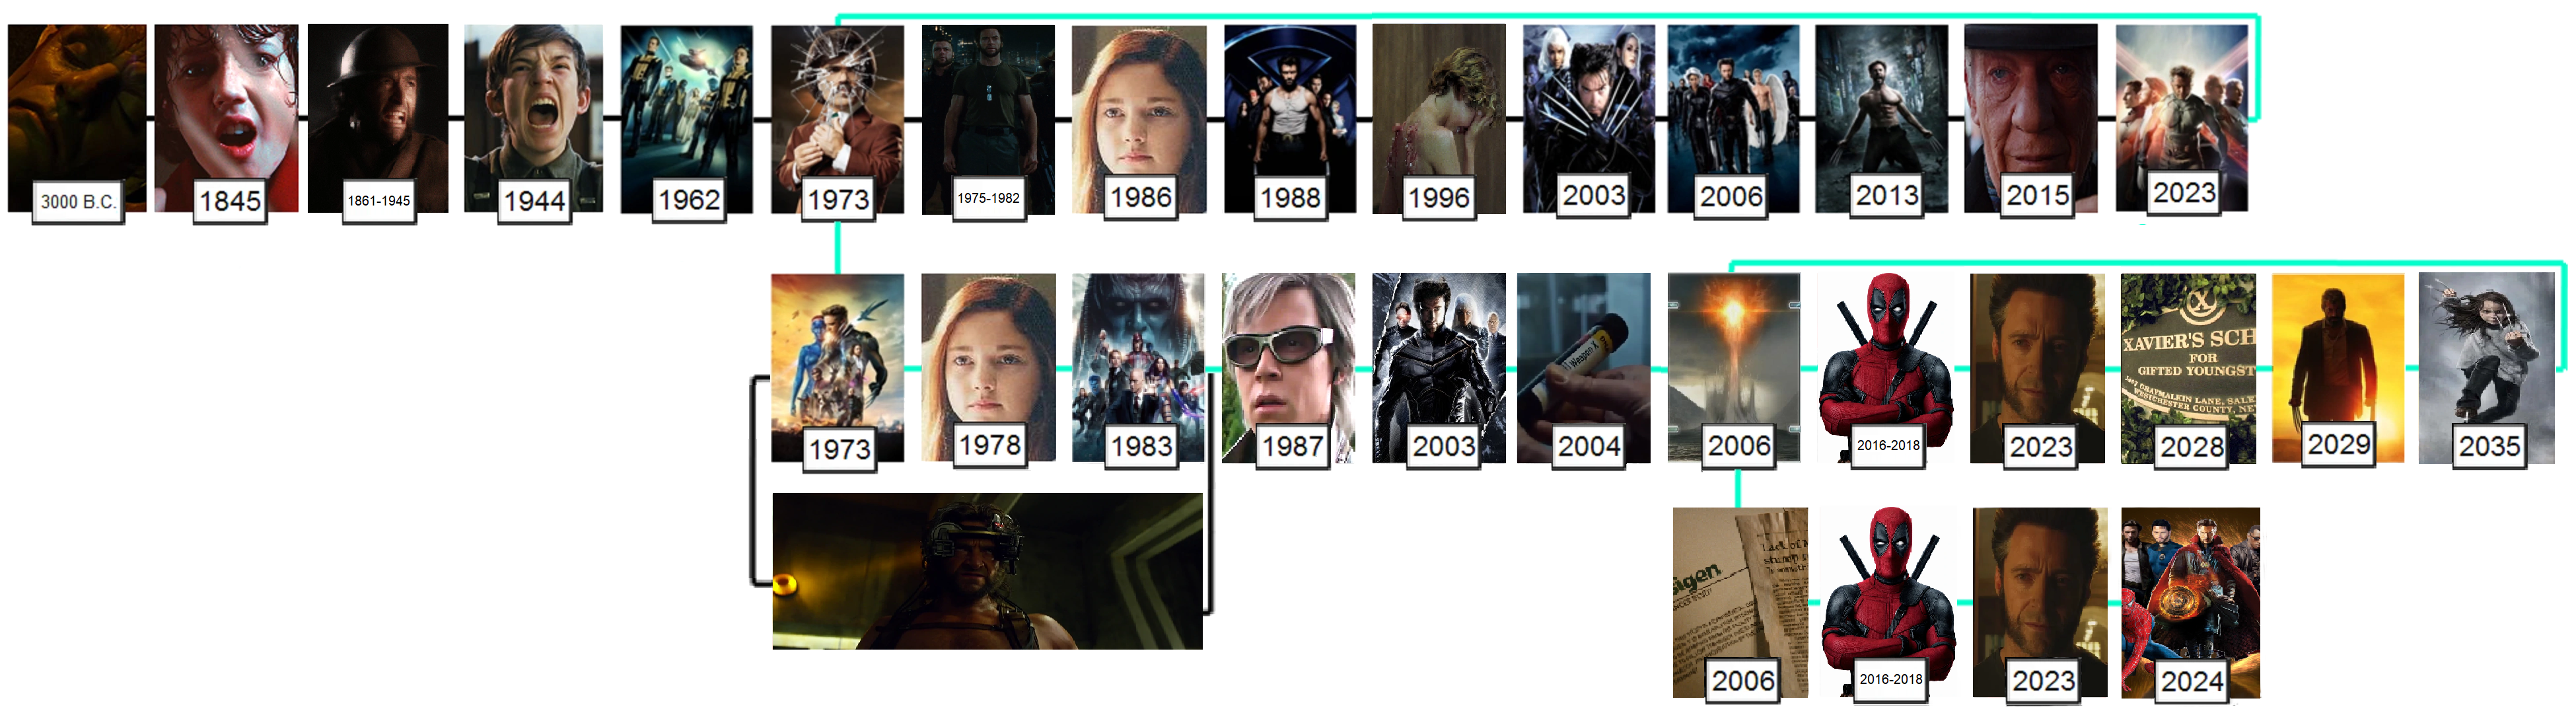 Timeline X Men Movies Fanon Wiki Fandom